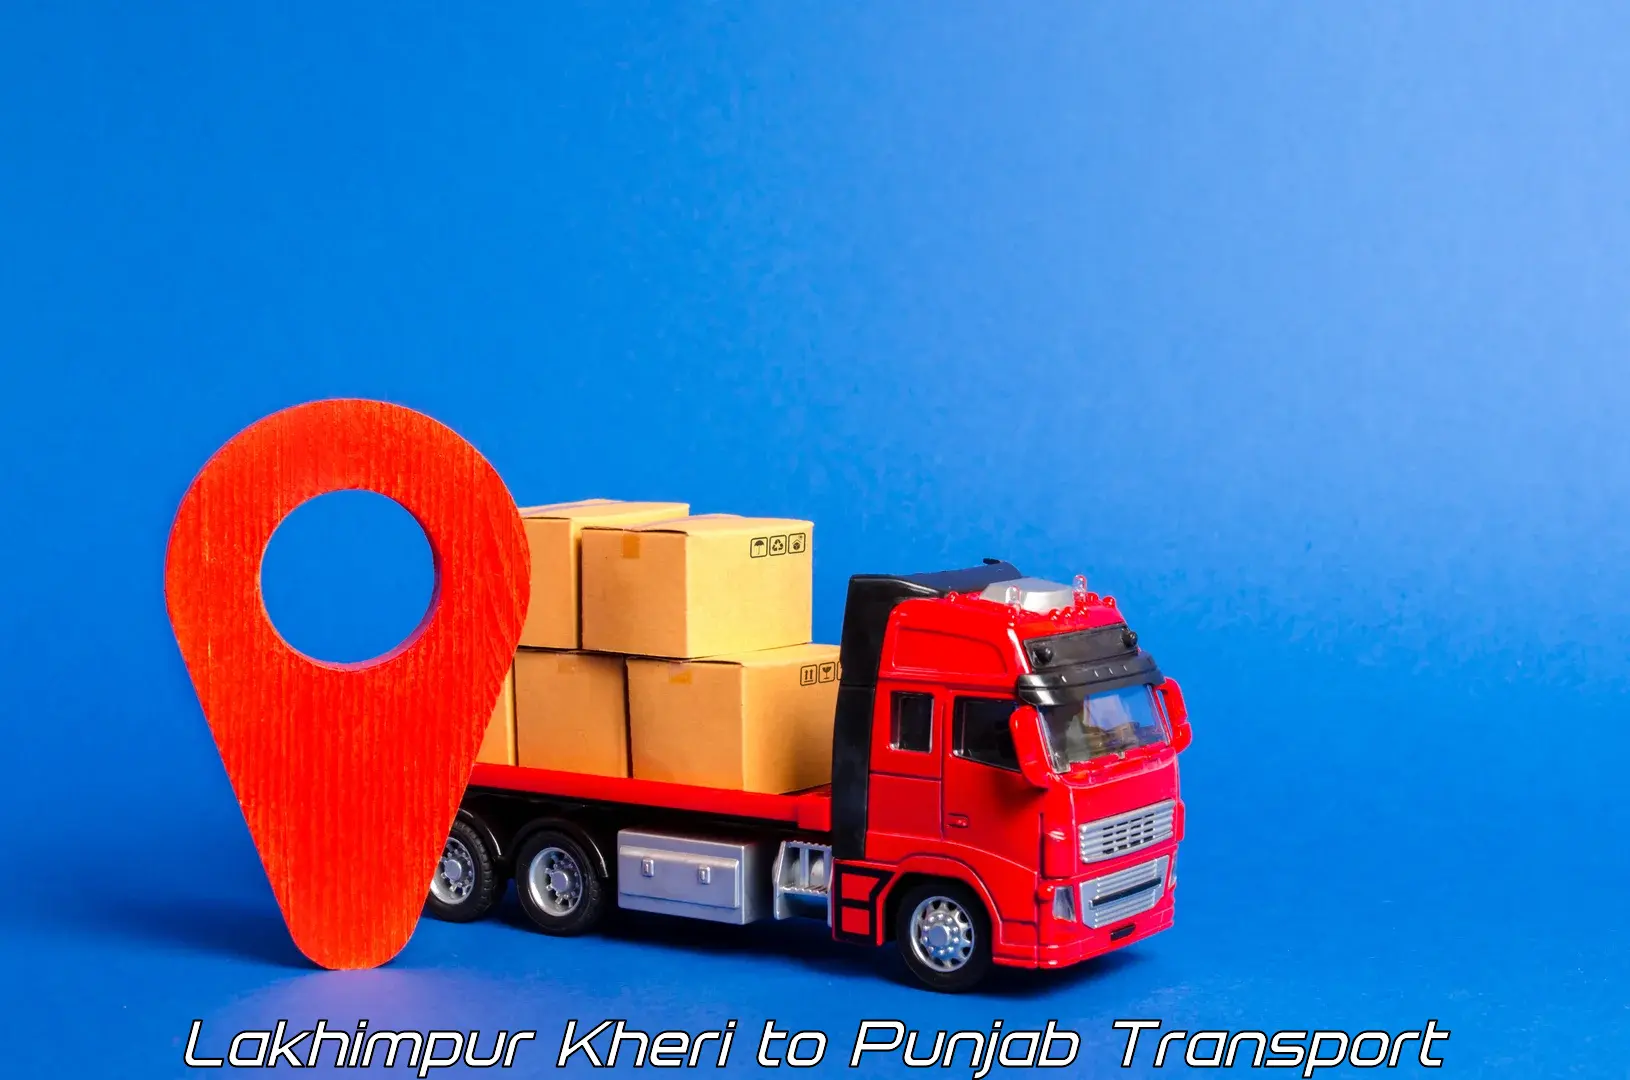 Transport in sharing Lakhimpur Kheri to Dhuri